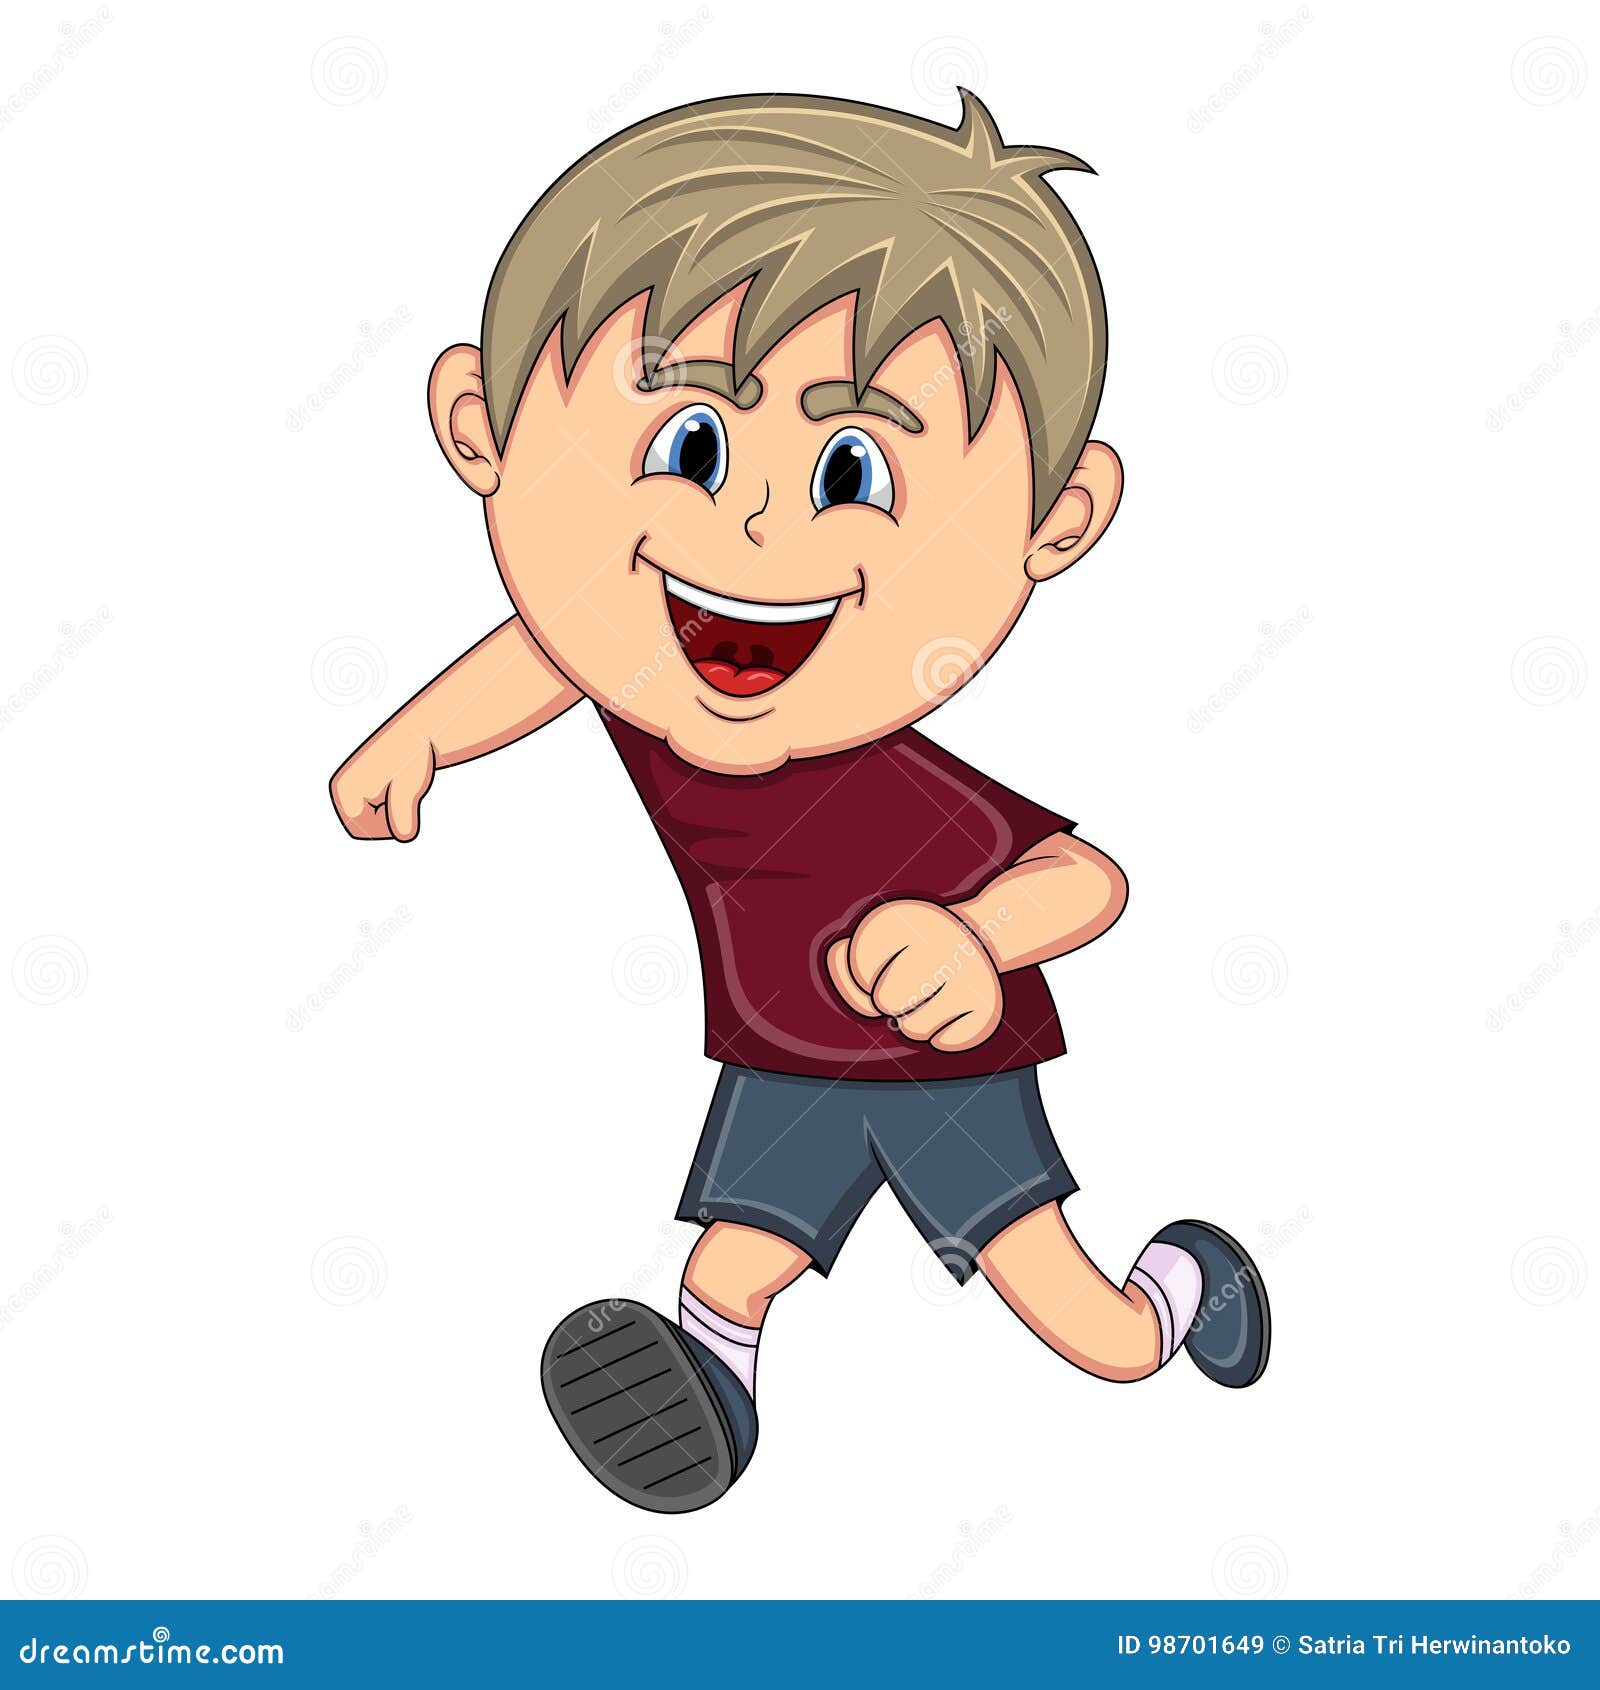 A boy running cartoon stock vector. Illustration of cool - 98701649